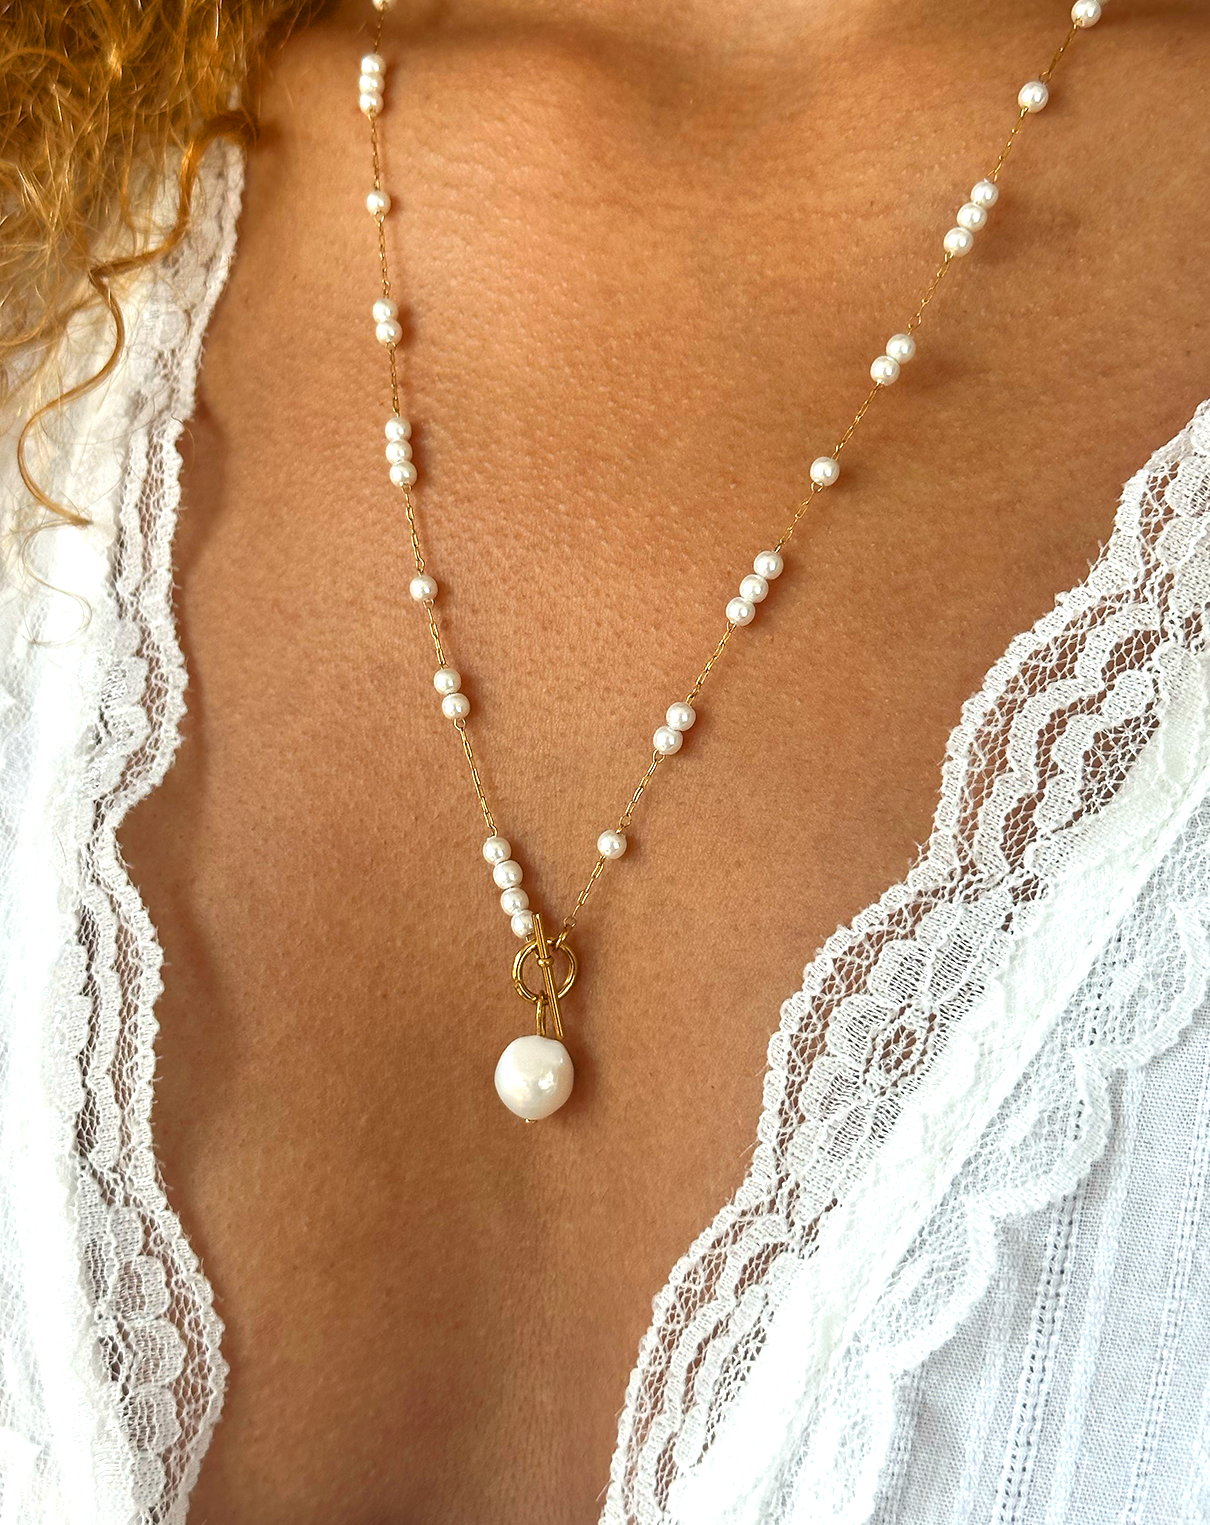 Collier, pendentif perle, attache au niveau de la perle par système de crochet autours d'un cou